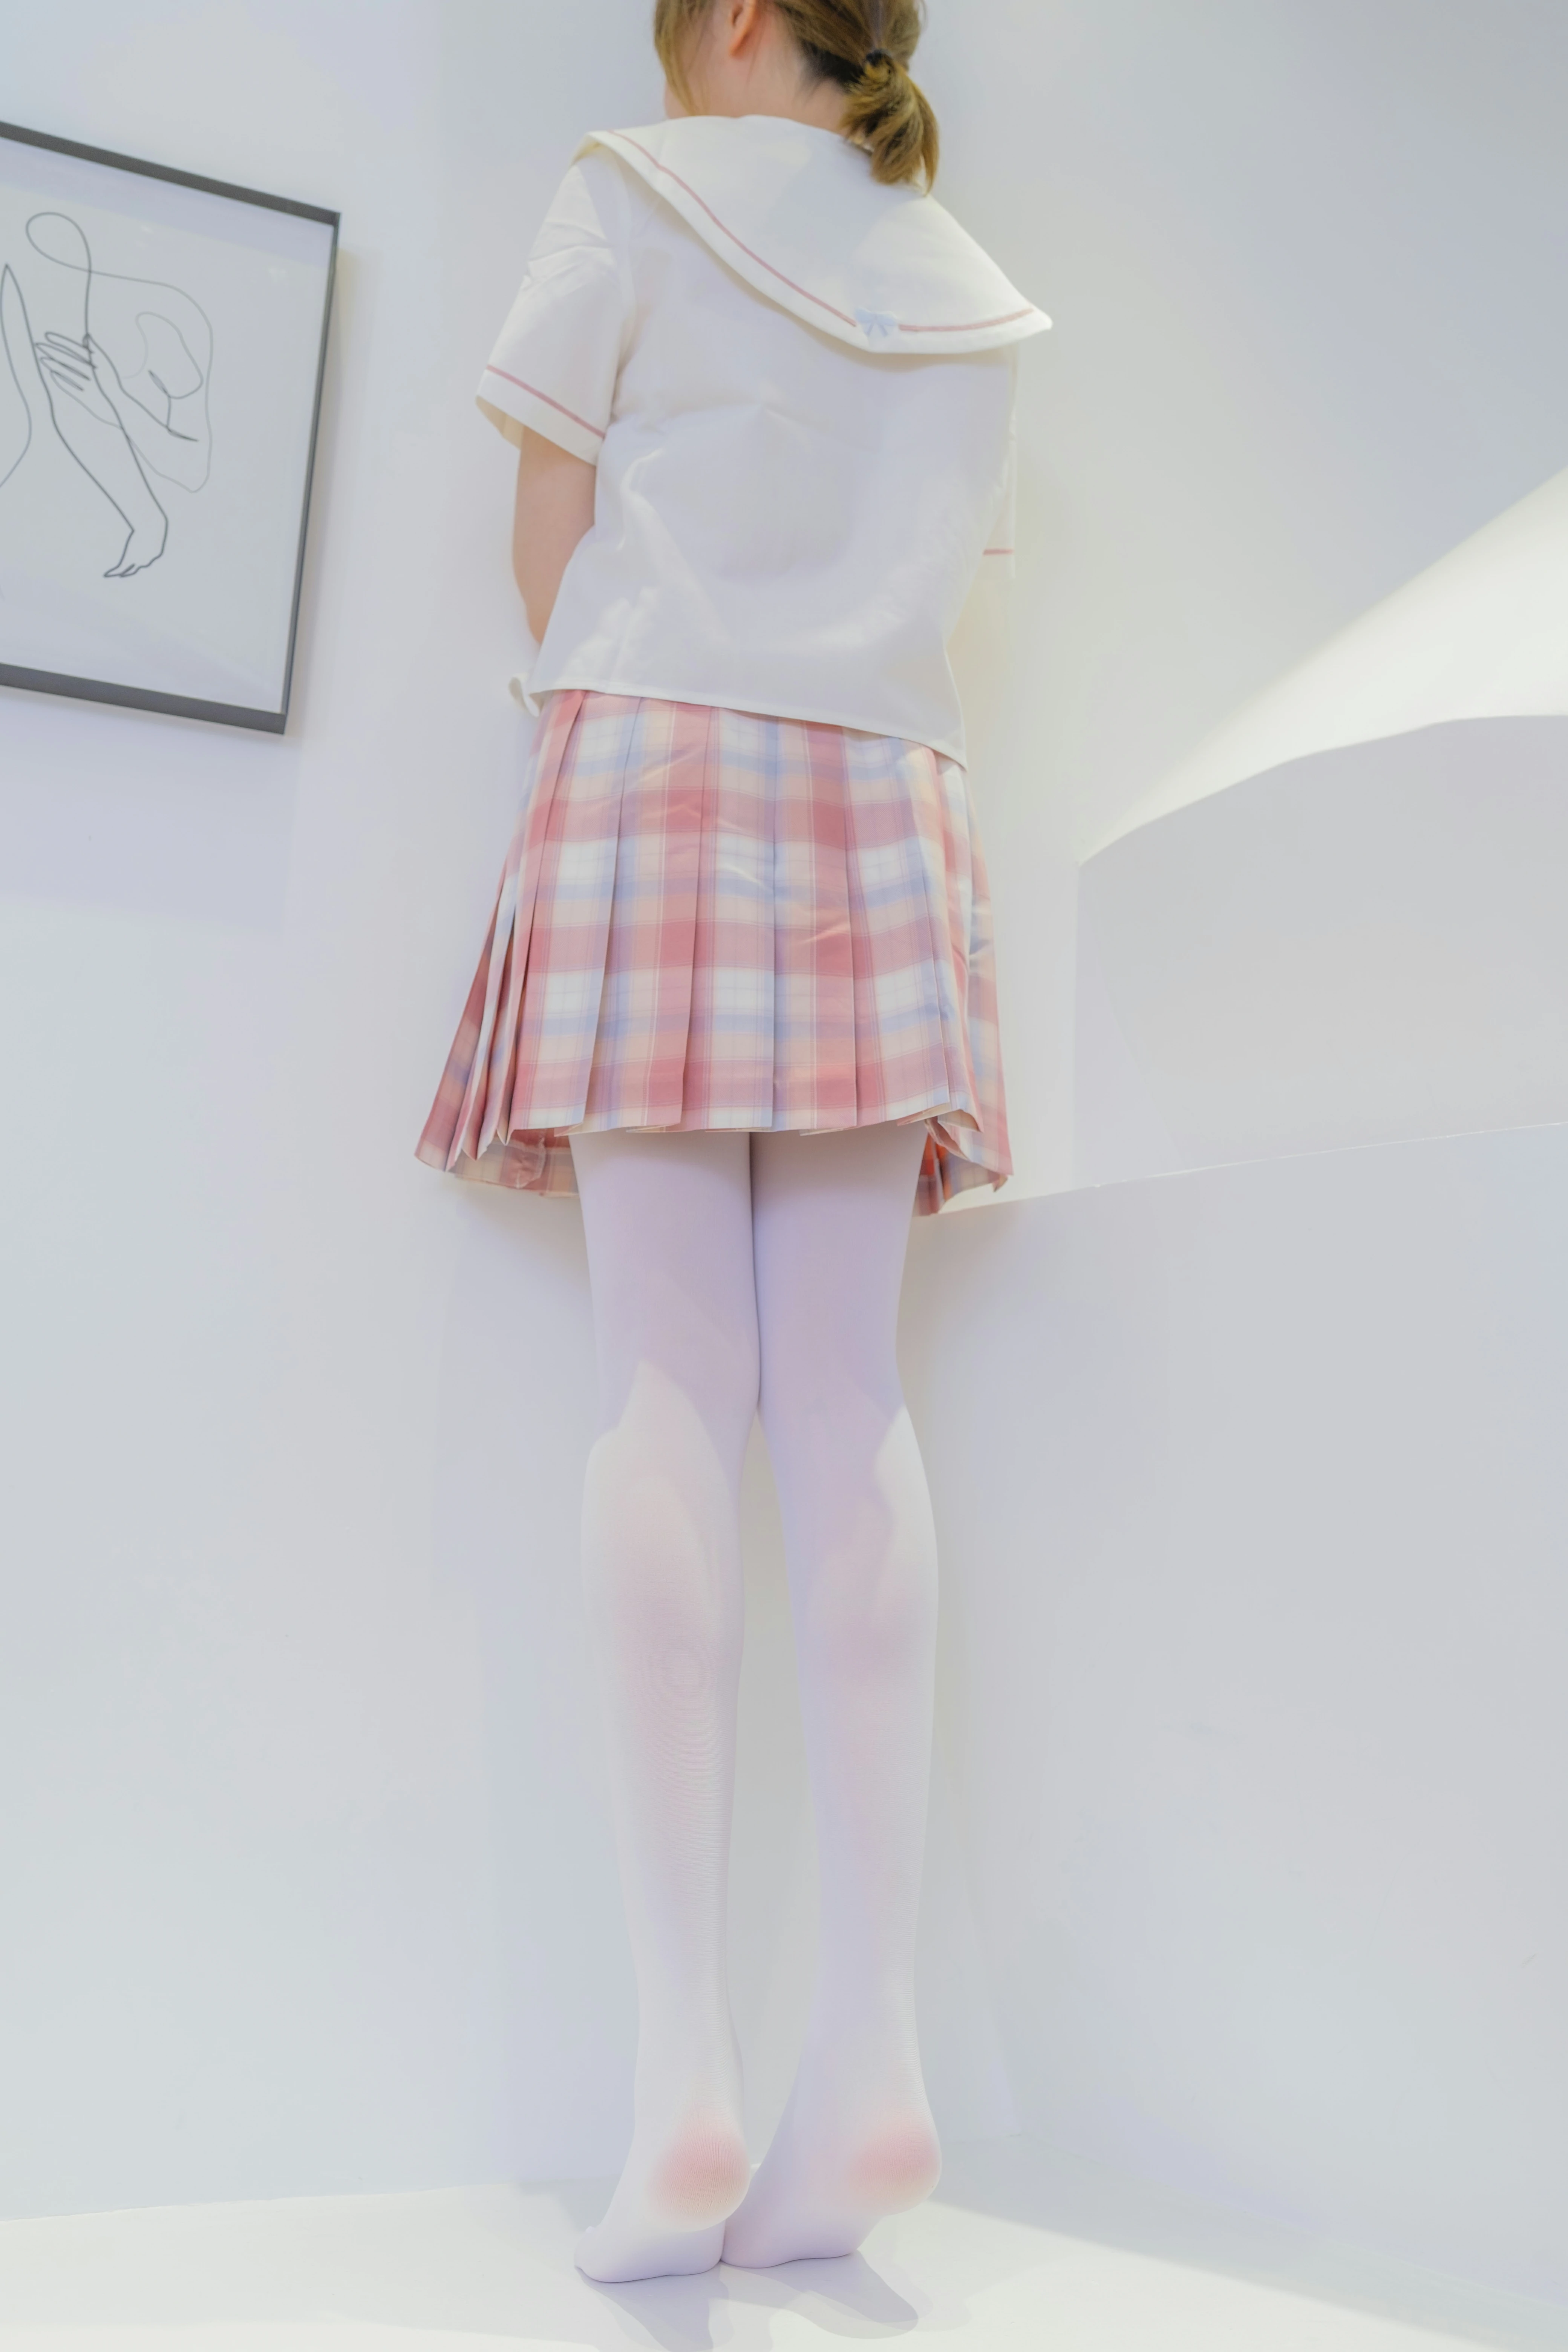 [森萝财团]GZAY3 酒店JK制服小萝莉 白色衬衫与粉色短裙加白色丝袜美腿性感私房写真集,0015